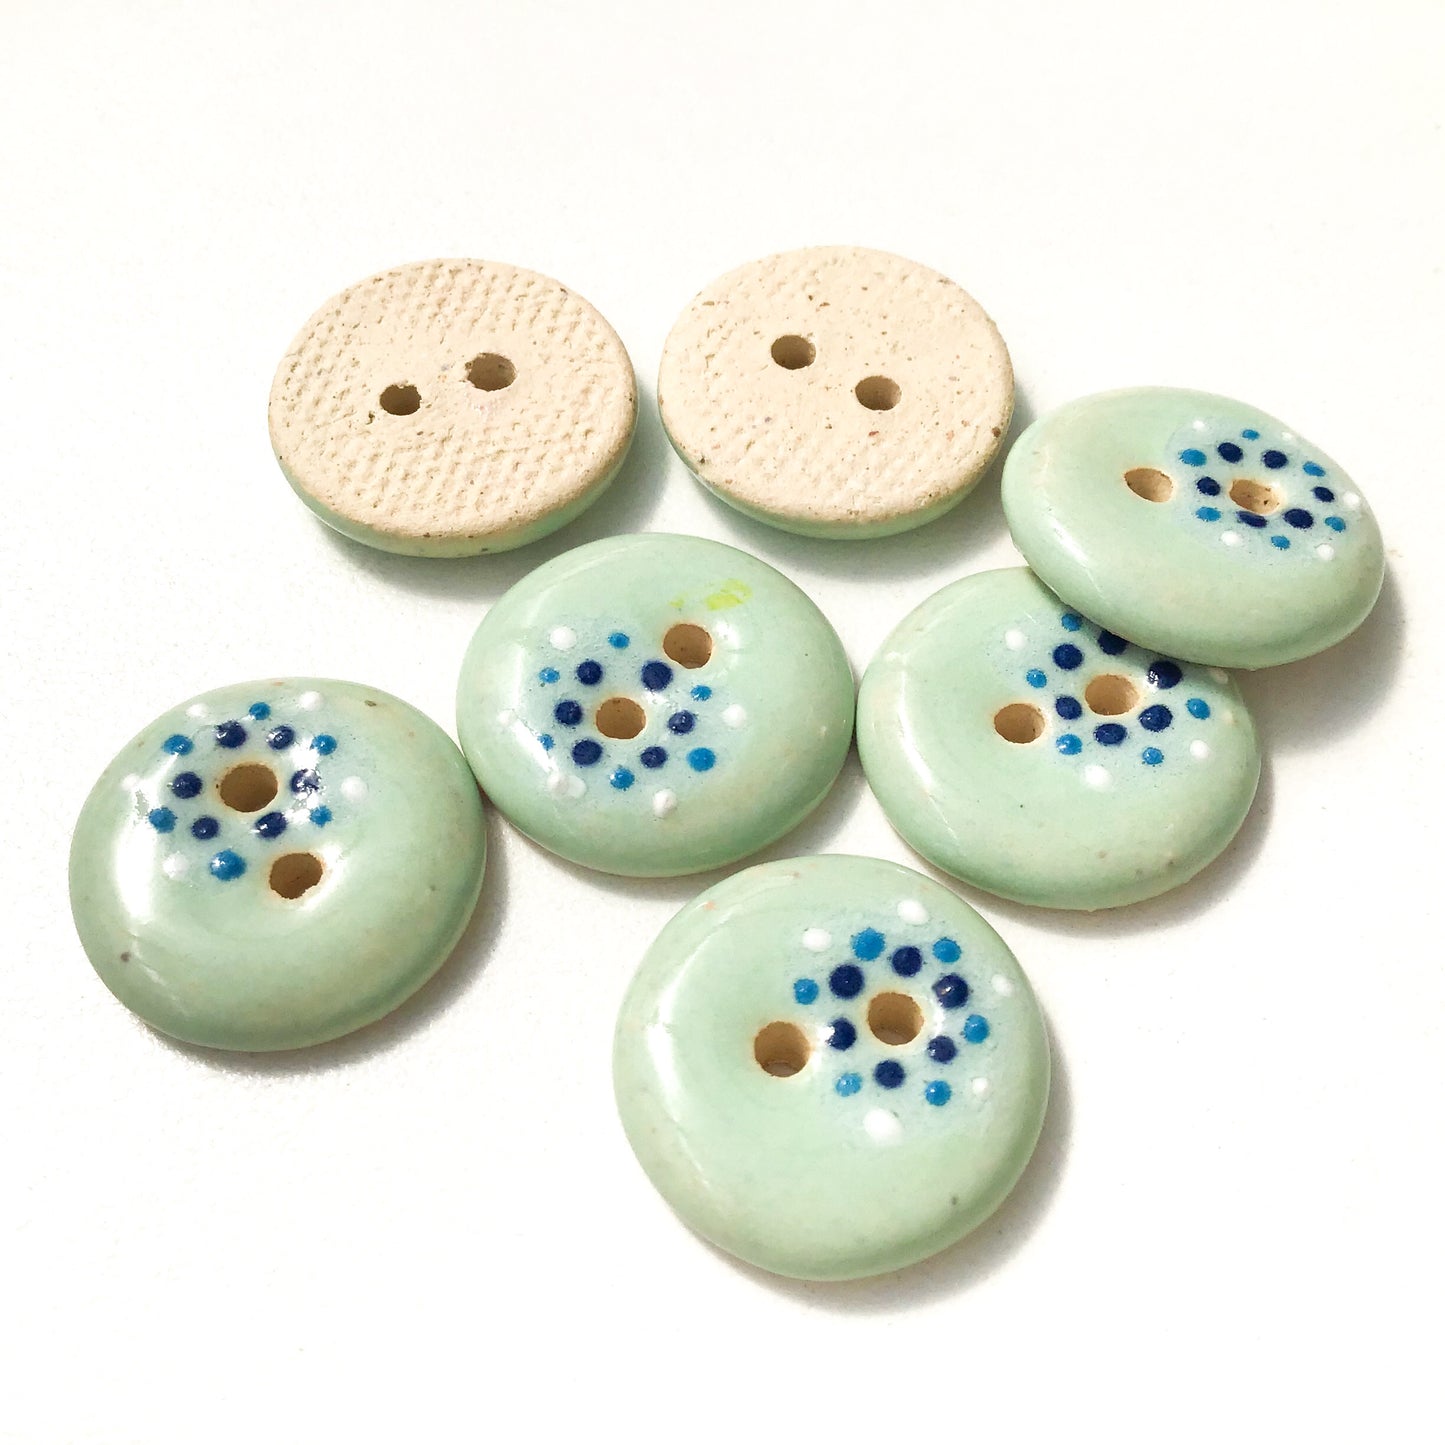 Light Aqua "Spark" Ceramic Buttons - Aqua Clay Buttons - 3/4" - 7 Pack